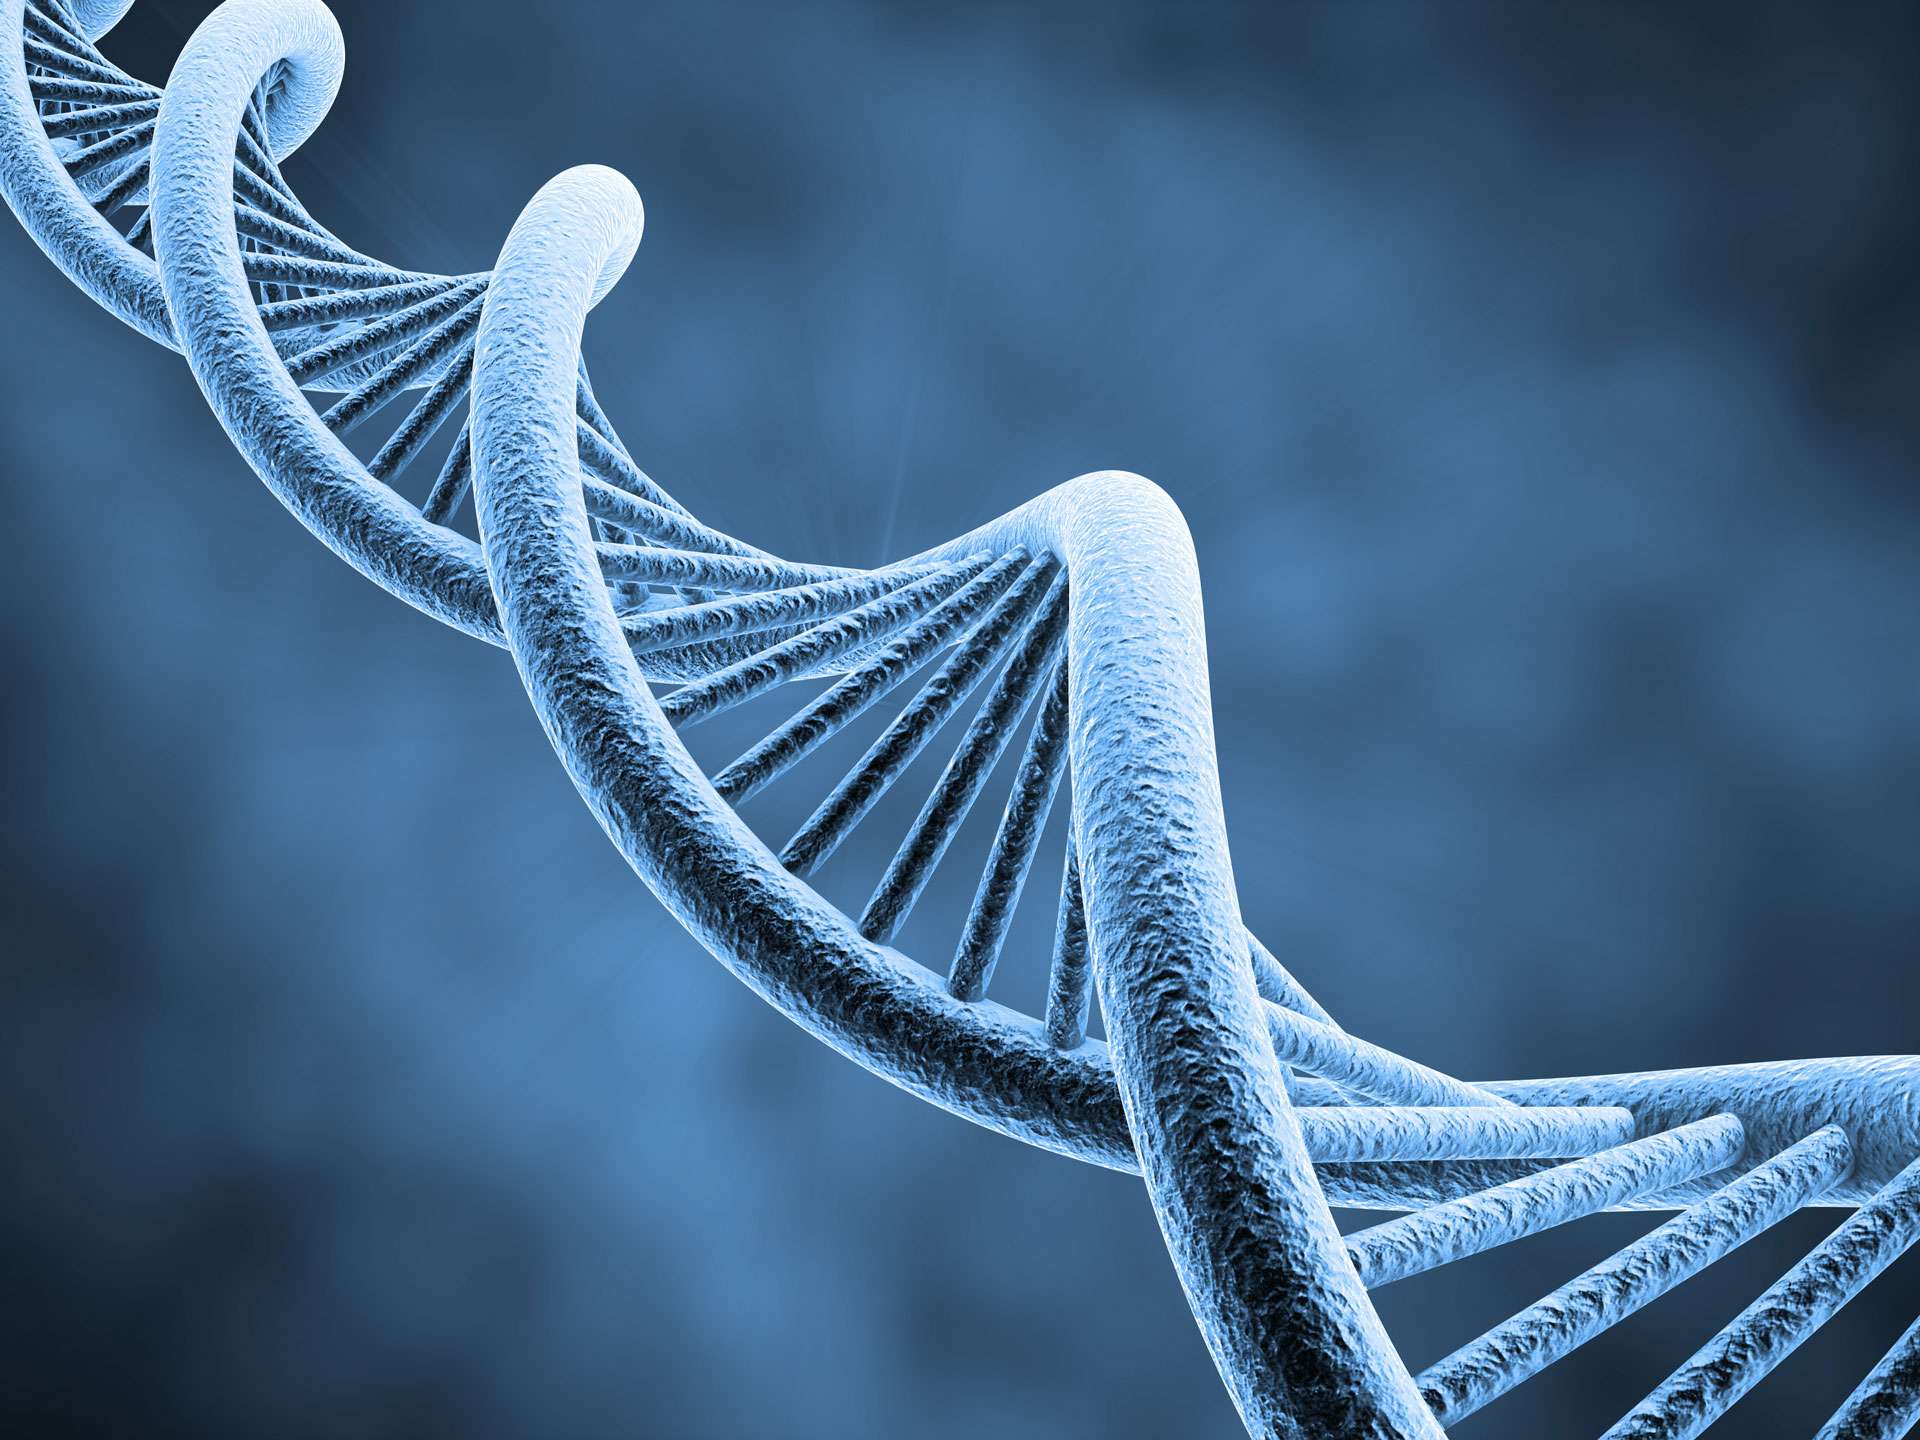 Entenda sobre a fragmentação do DNA espermático